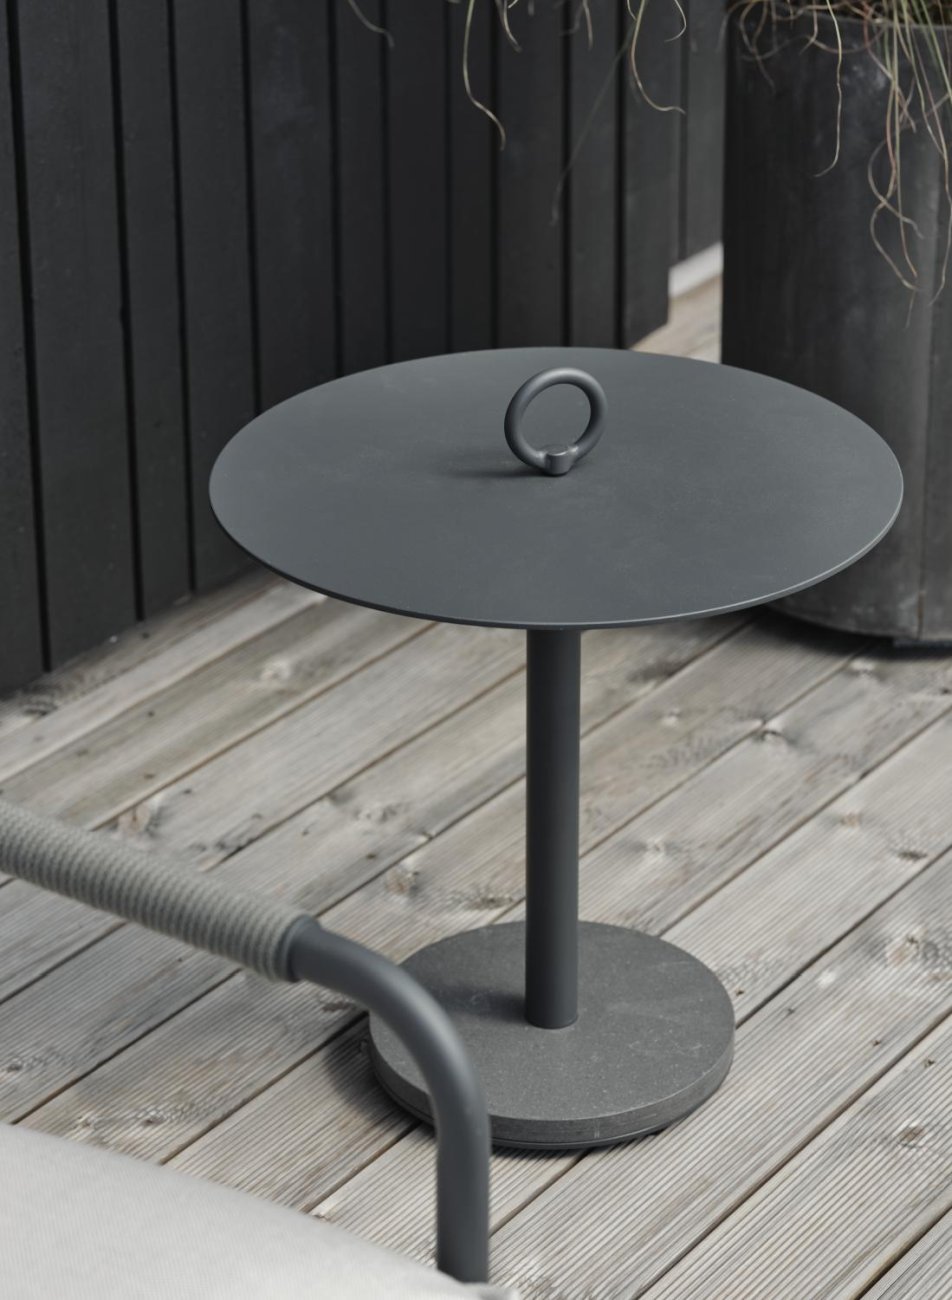 Der Gartenbeistelltisch Niobe überzeugt mit seinem modernen Design. Gefertigt wurde die Tischplatte aus Metall und hat einen Anthrazit Farbton. Das Gestell ist auch aus Metall und hat eine Anthrazit Farbe. Der Tisch besitzt einen Durchmesser von 50 cm.